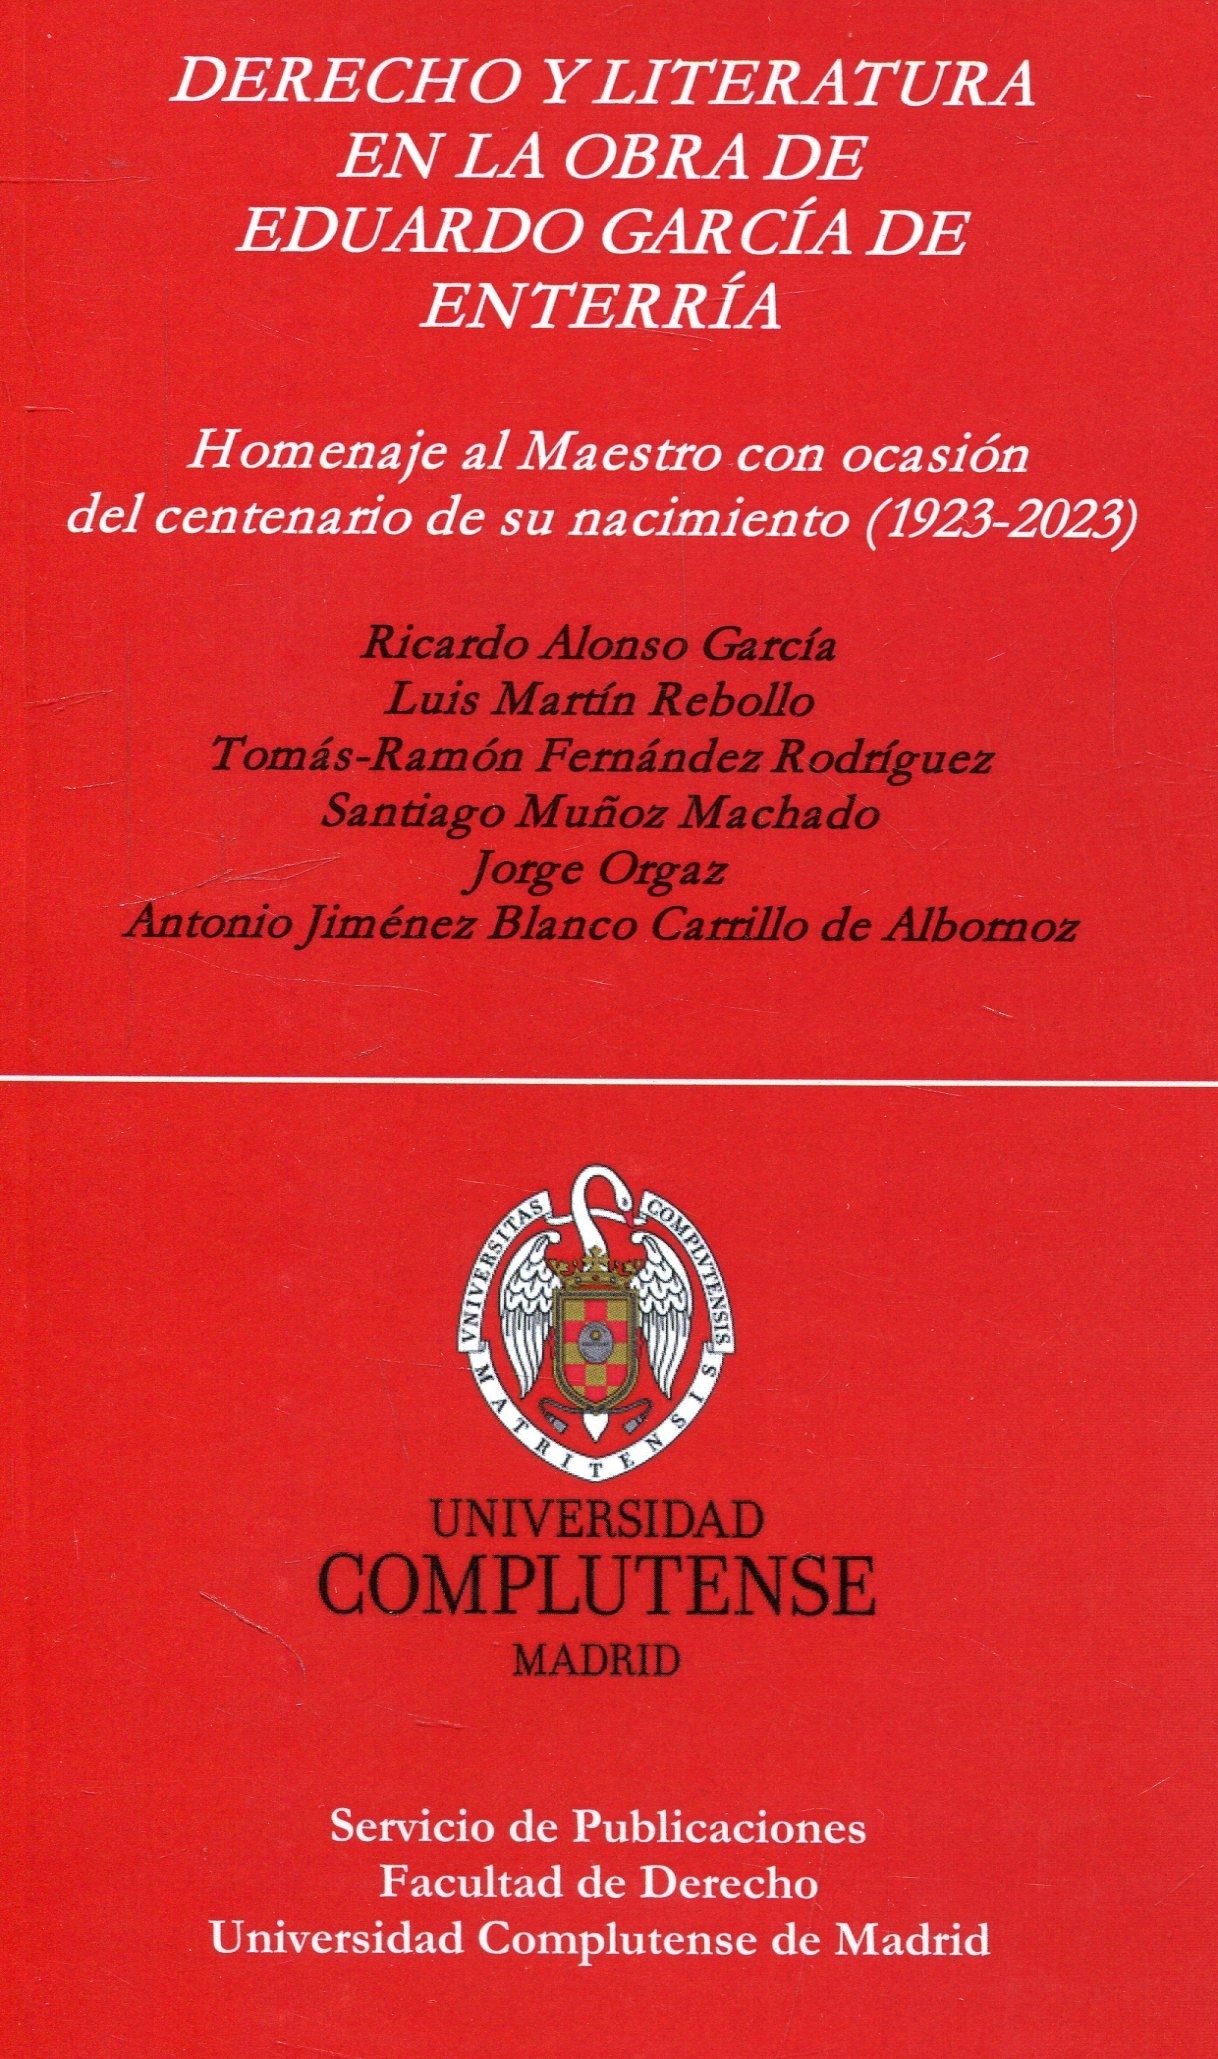 Derecho y literatura en la obra de Eduardo García de Enterrería "Homenaje al Maestro con ocasión del centenario de su nacimiento (1923-2023)"